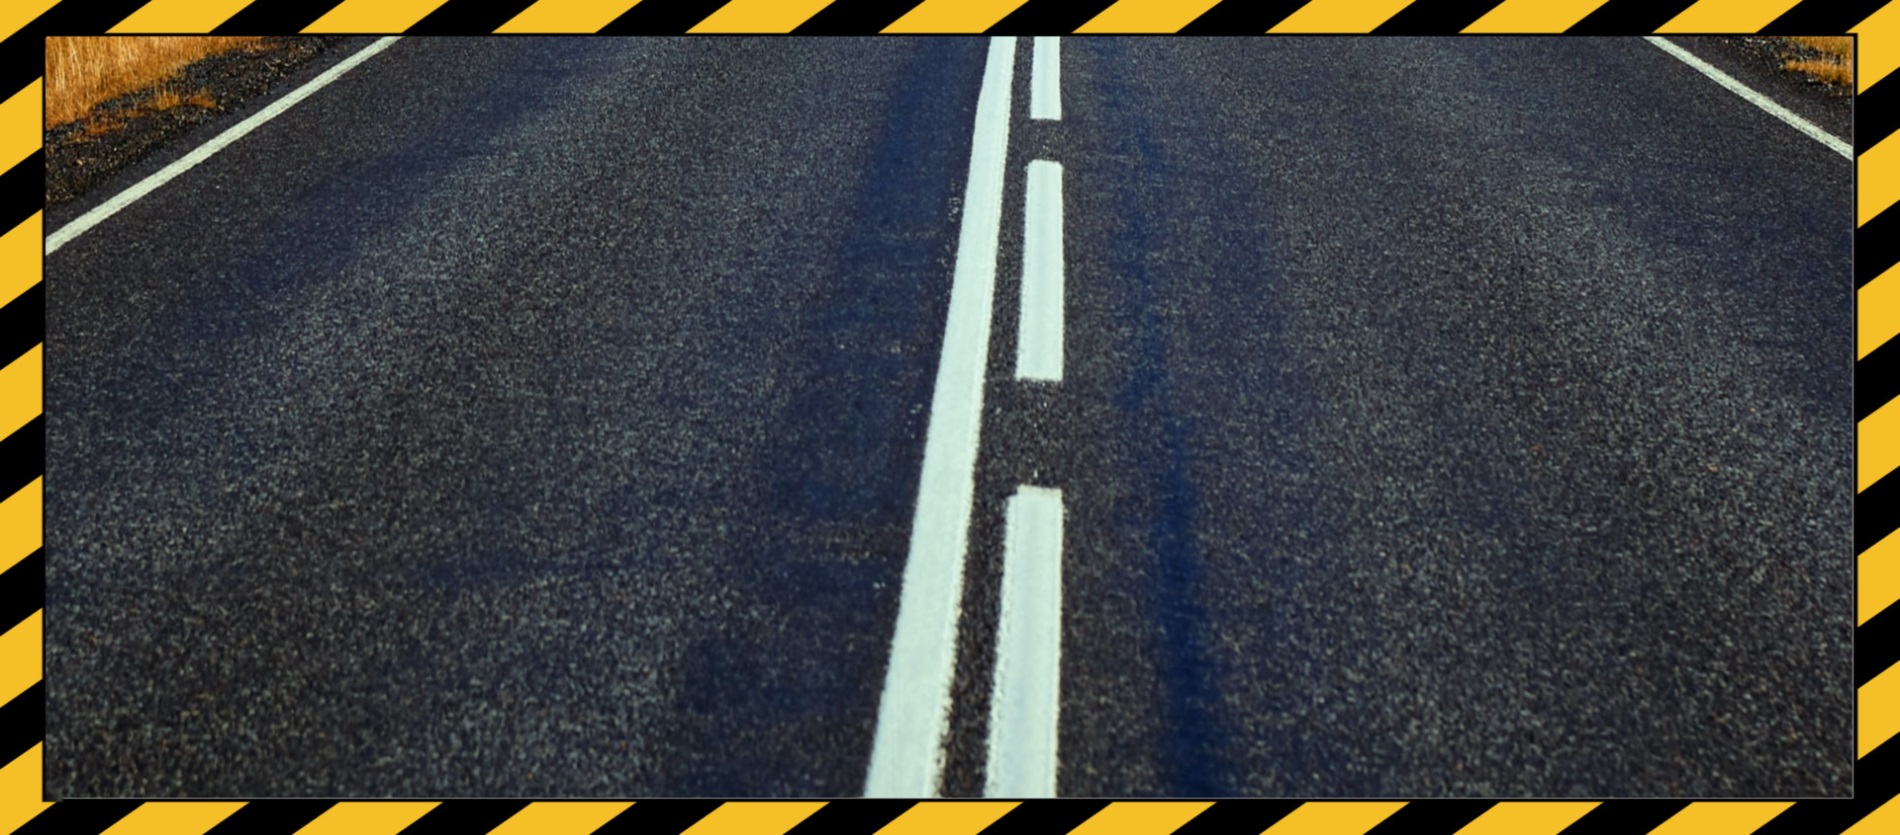 Caution tape surround a bitumen road